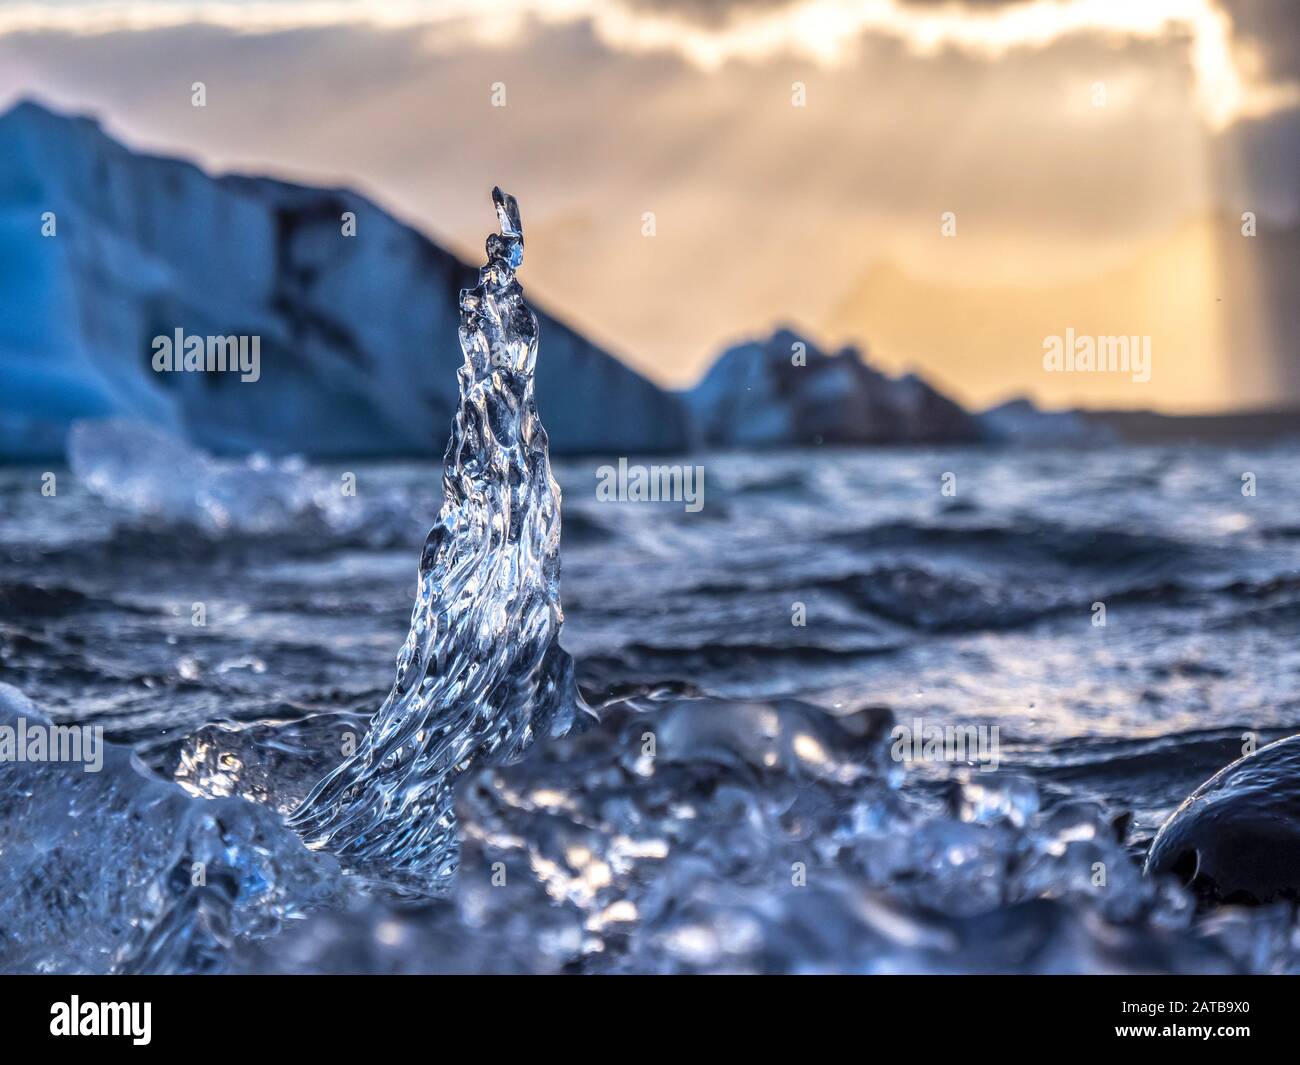 Ein Eiskristall ragt aus dem Wasser empor. Im Hintergrund bildet der versteckte Sonnenuntergang den perfecten Kontrast. Ein romantischer Moment. Stockfoto